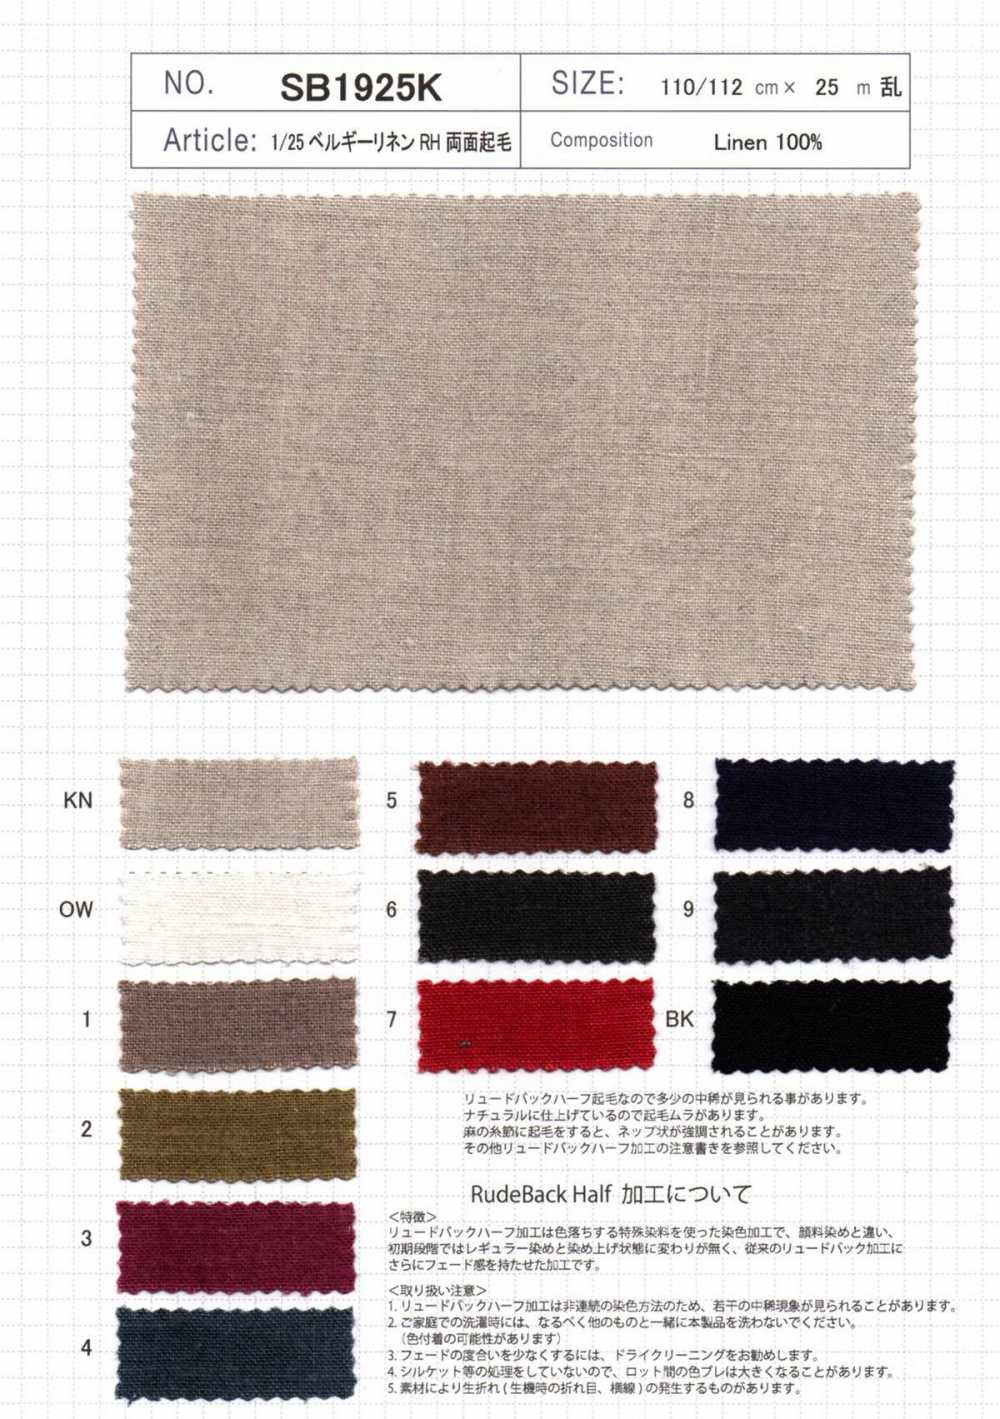 SB1925K Nombre Del Producto 1/25 Lino Belga RH Fuzzy En Ambos Lados[Fabrica Textil] SHIBAYA